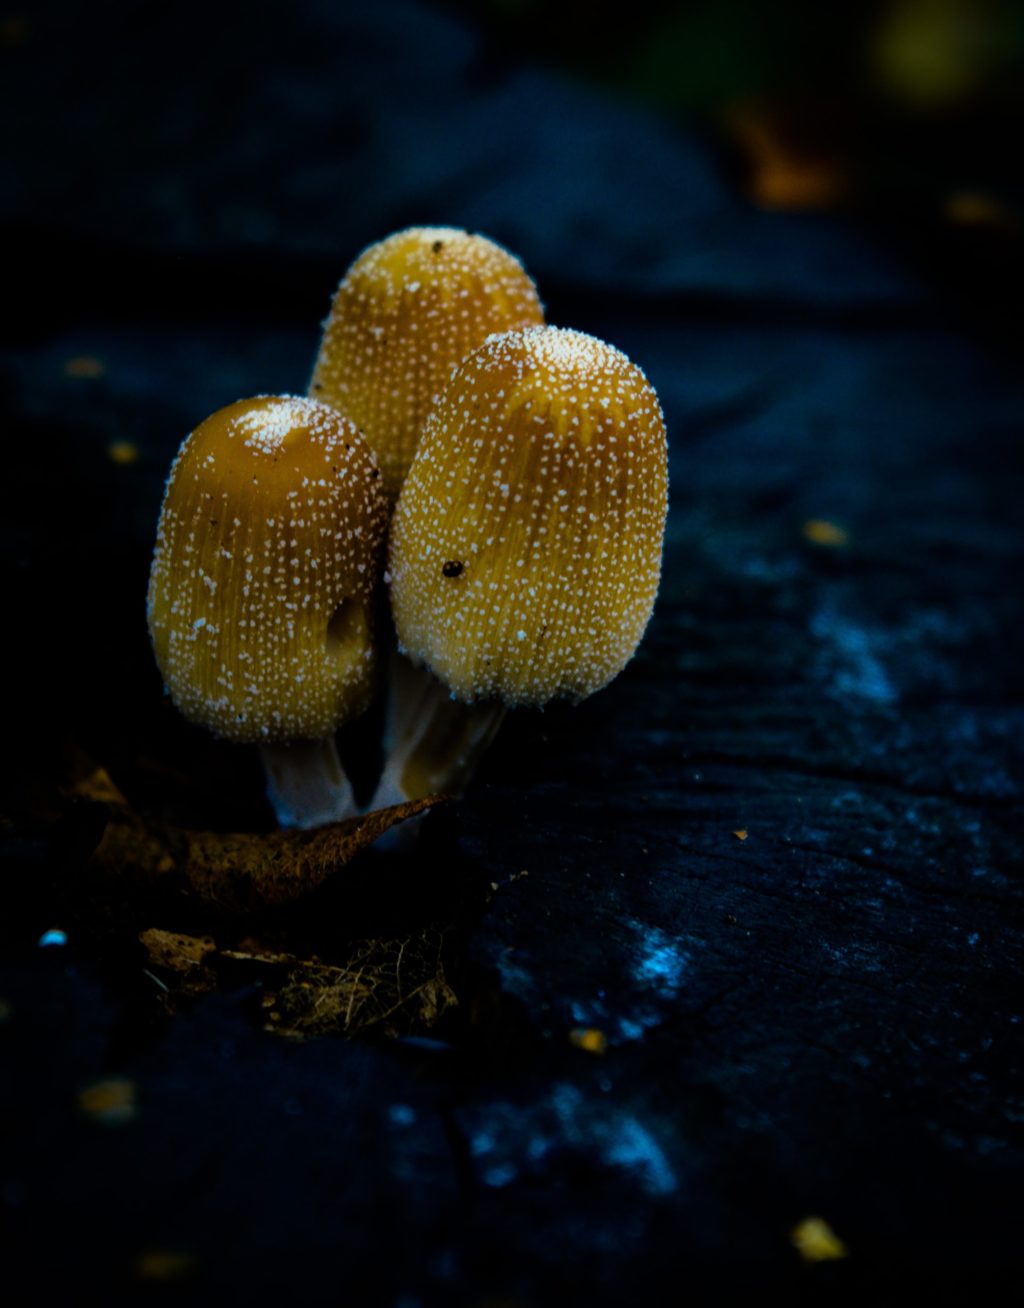 mysterious yellow mushroom